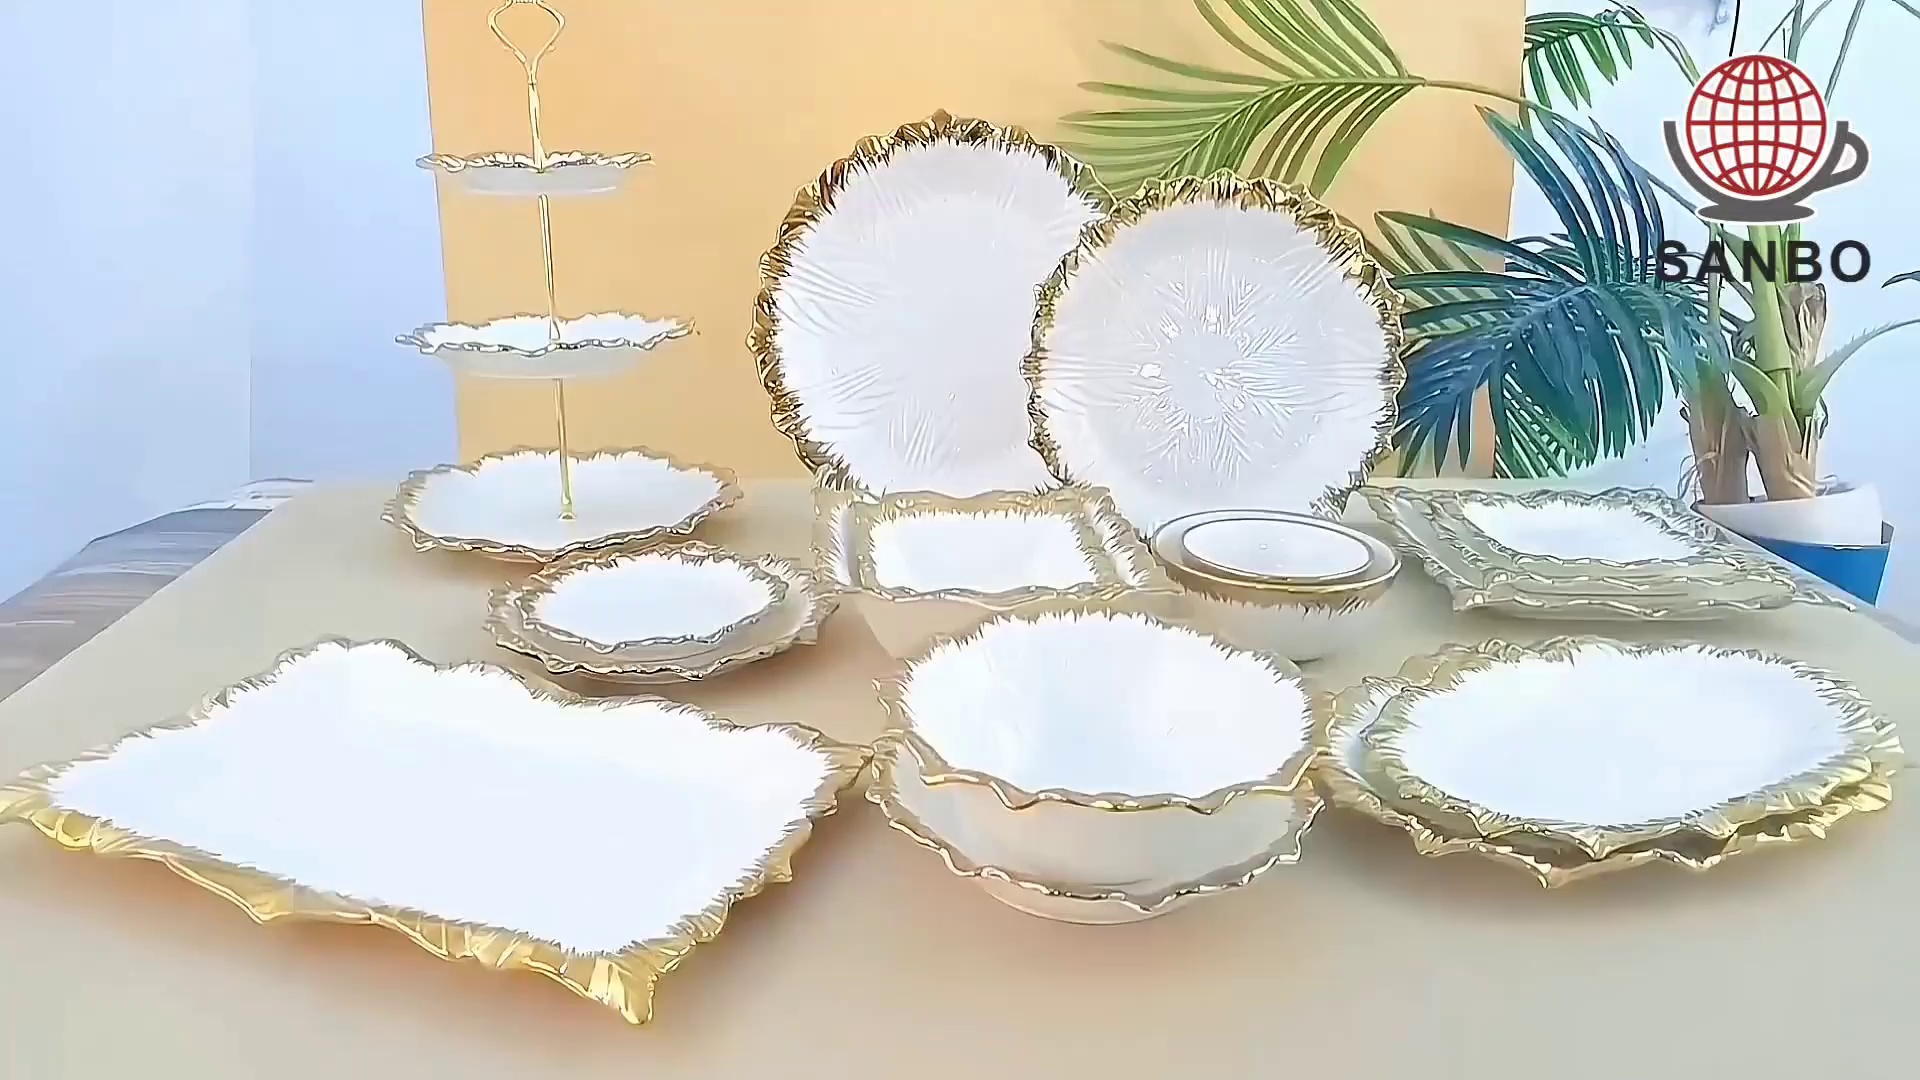 luxury dinnerware sets,square dishware,custom dishware